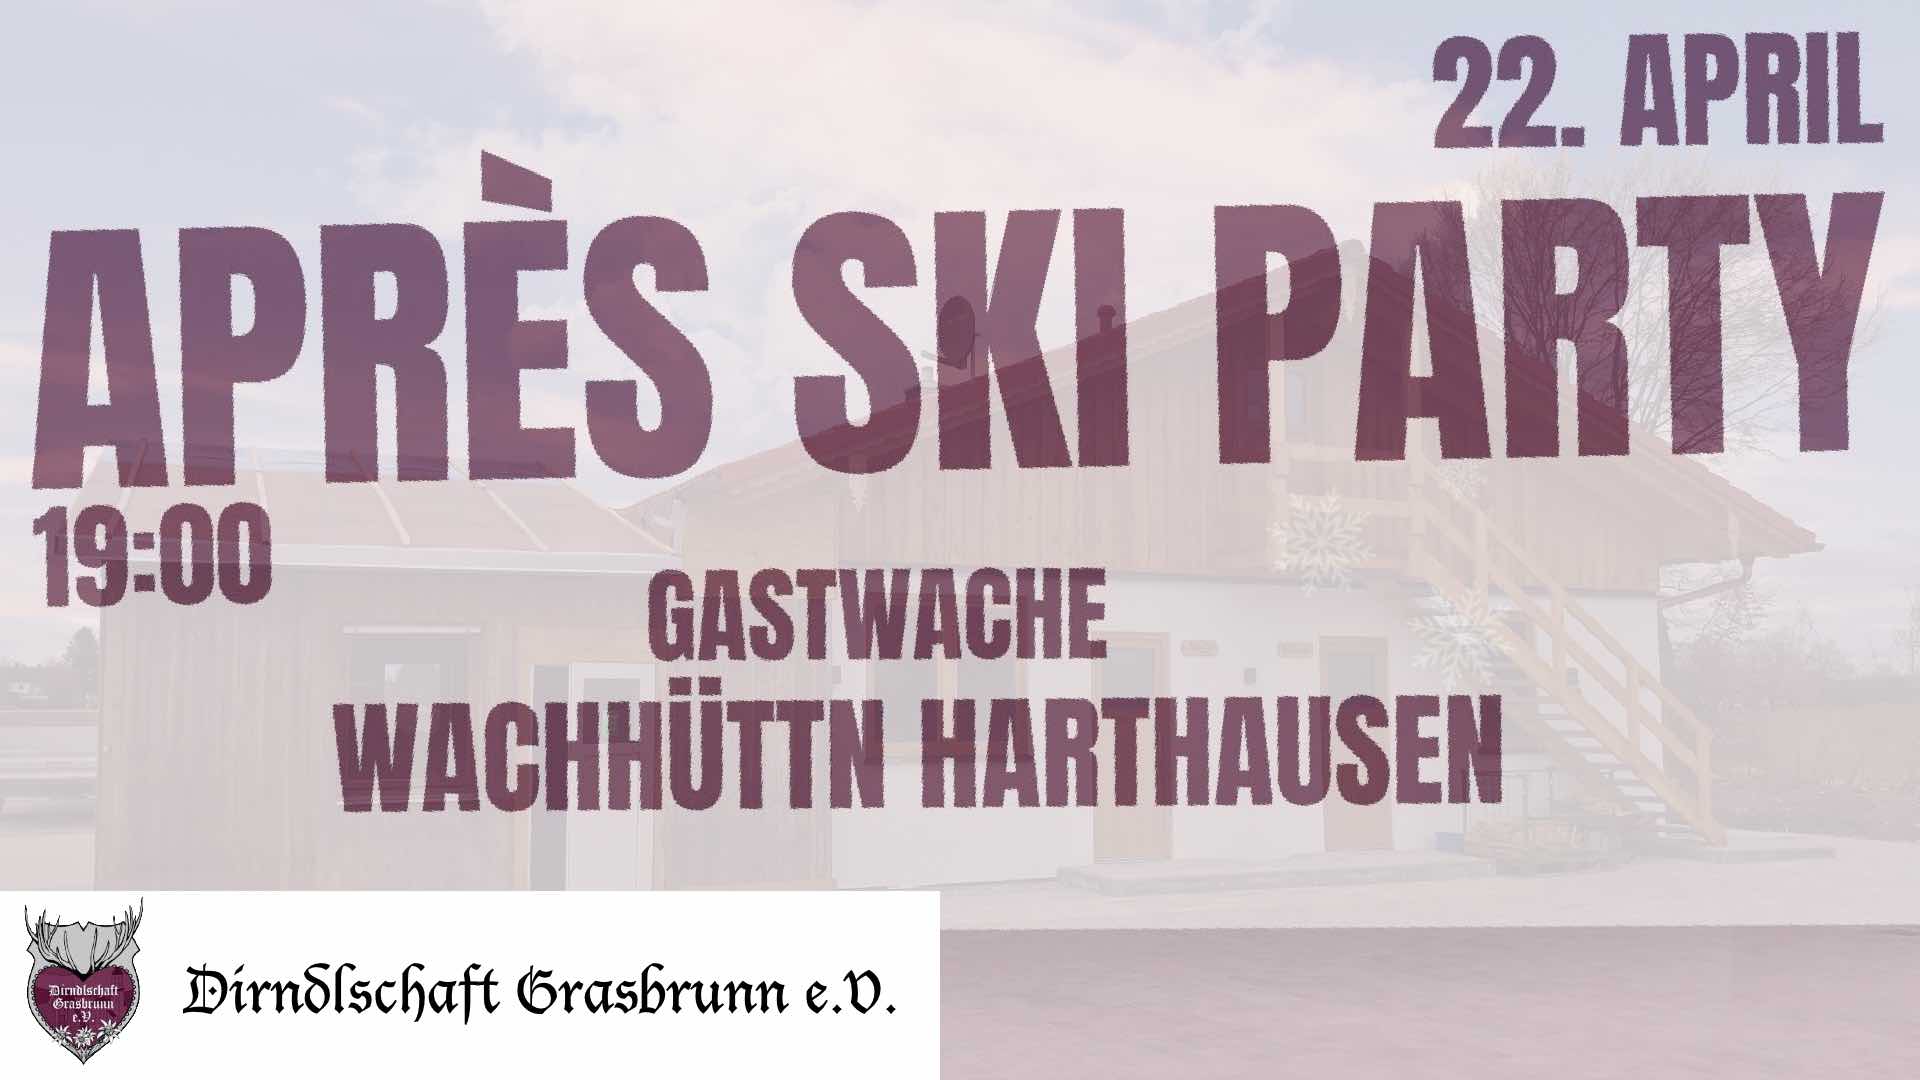 Maibaum „Après-Ski“ Gastwache mit der Dirndlschaft Grasbrunn